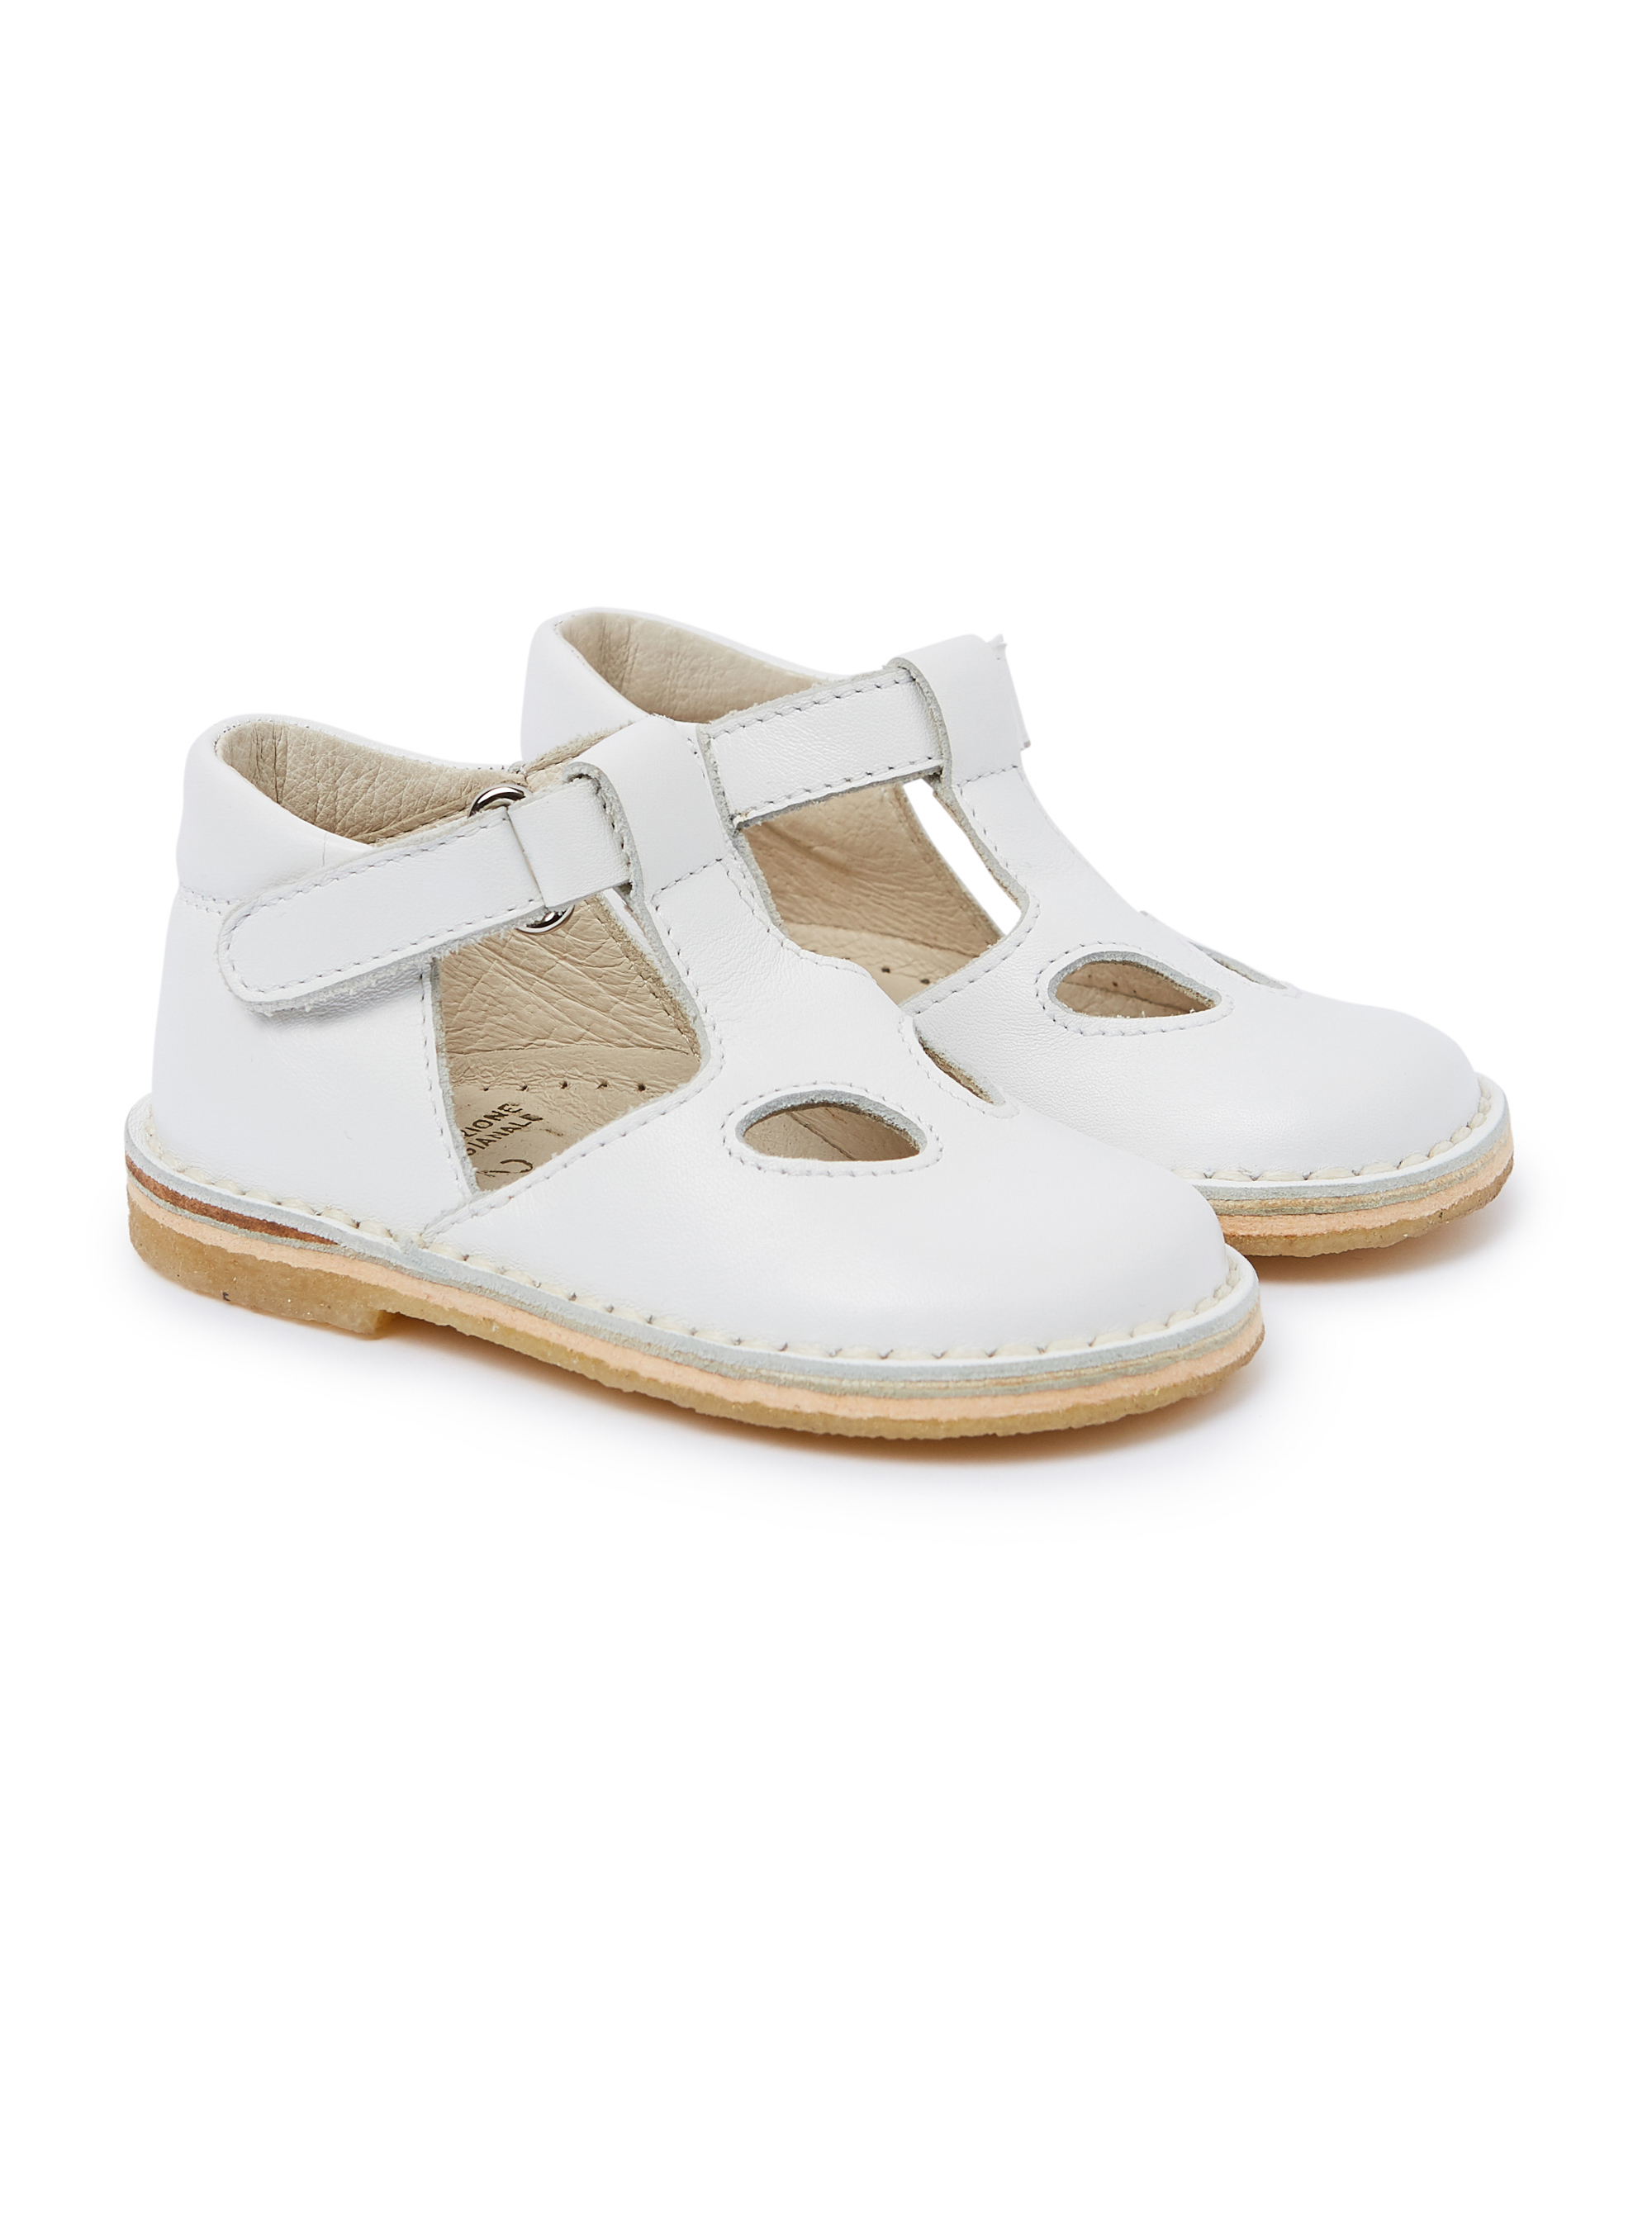 Sandales en cuir blanches avec 2 trous - Chaussures - Il Gufo